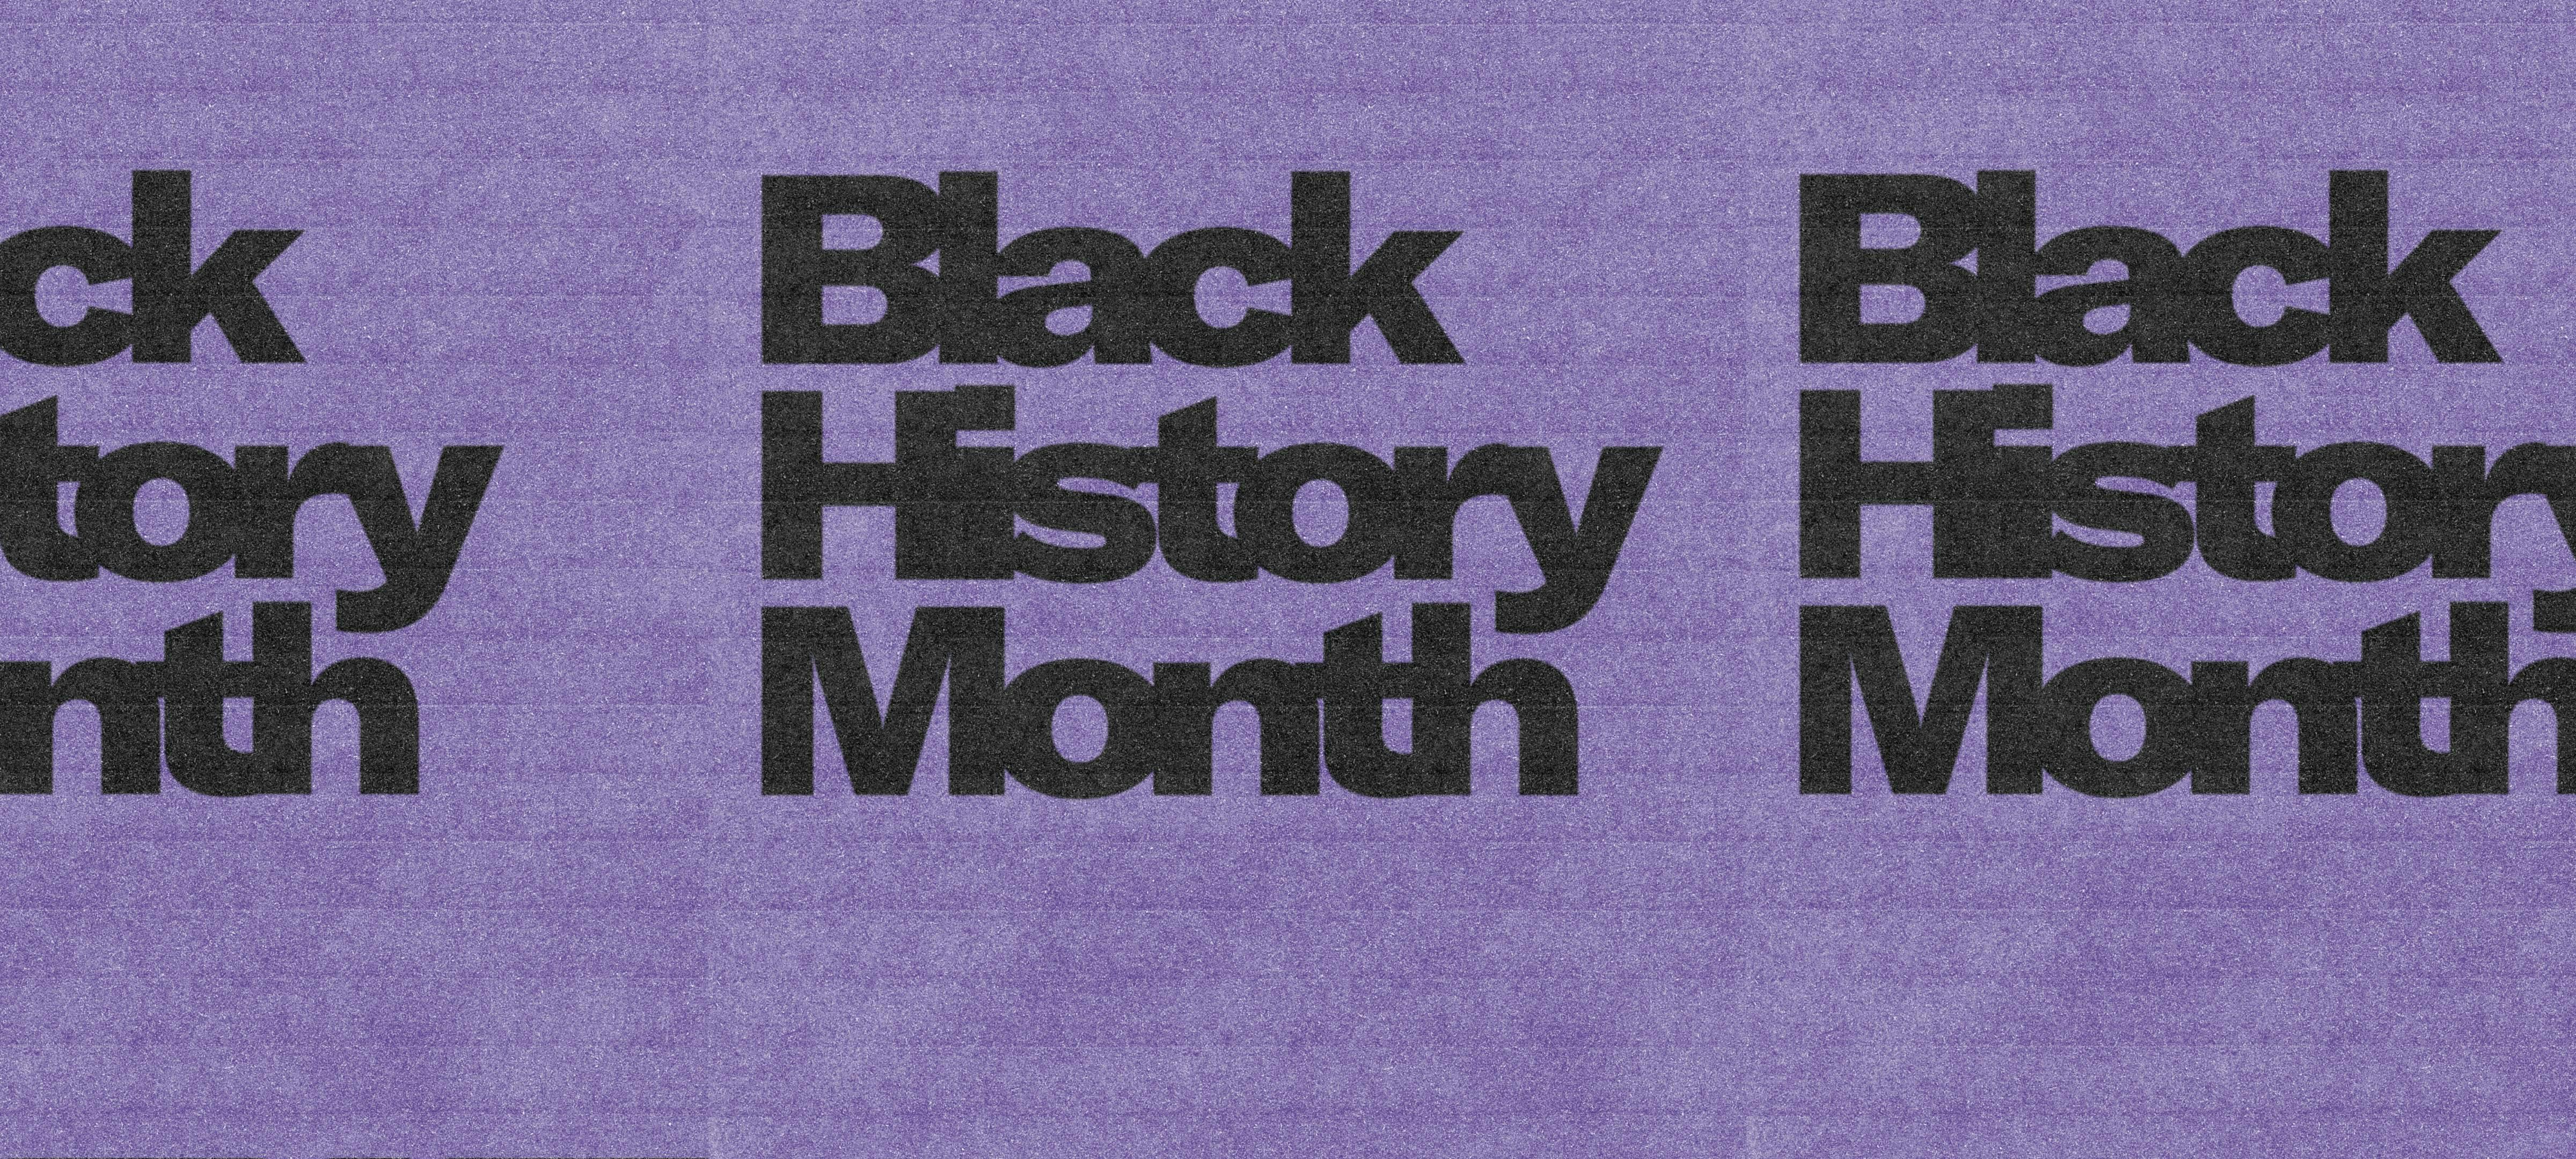 Black History Month: Week 4